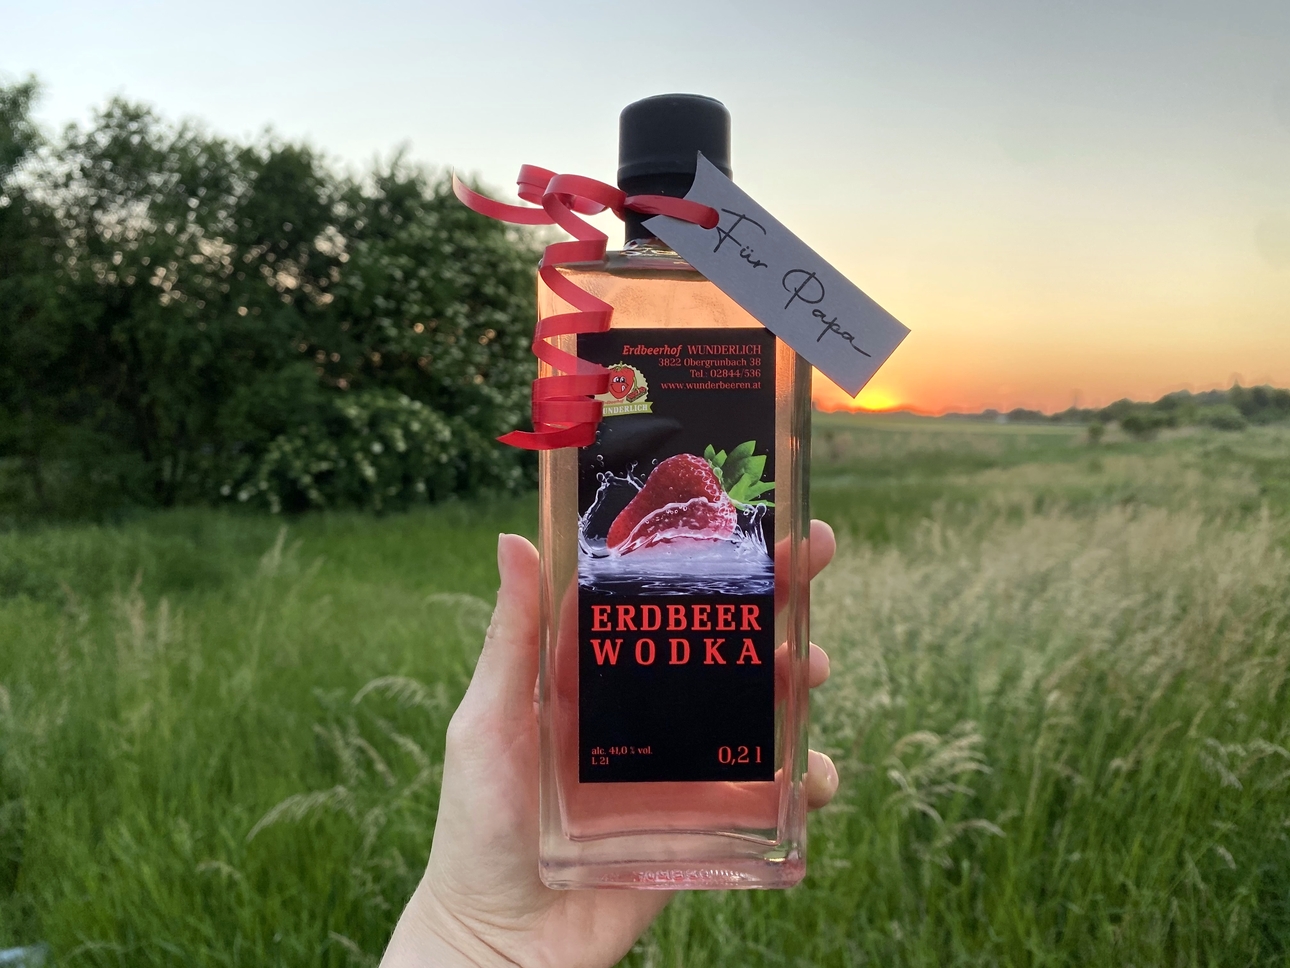 Erdbeerhof Wunderlich - Erdbeer-Wodka